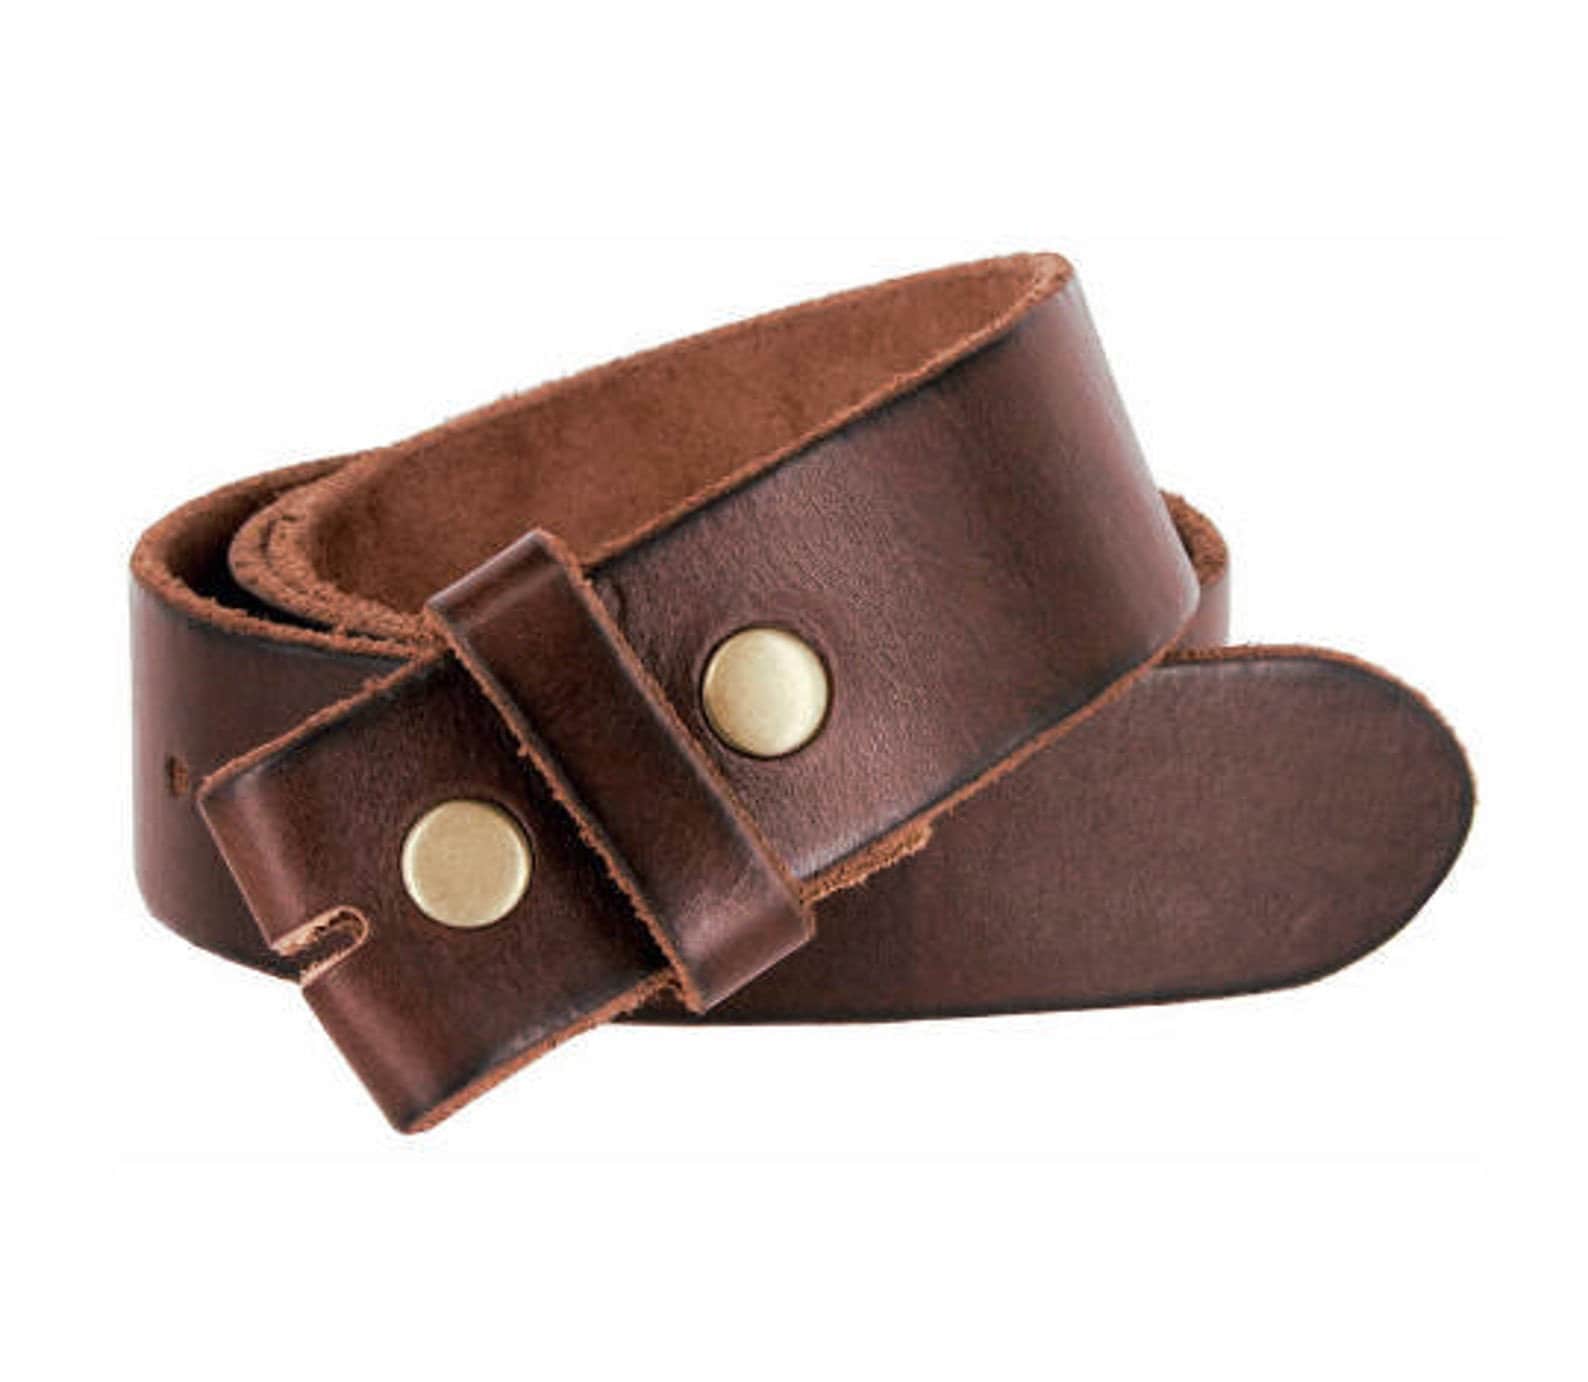 1.5'' Wide Premium Brown Leather Belt Strap